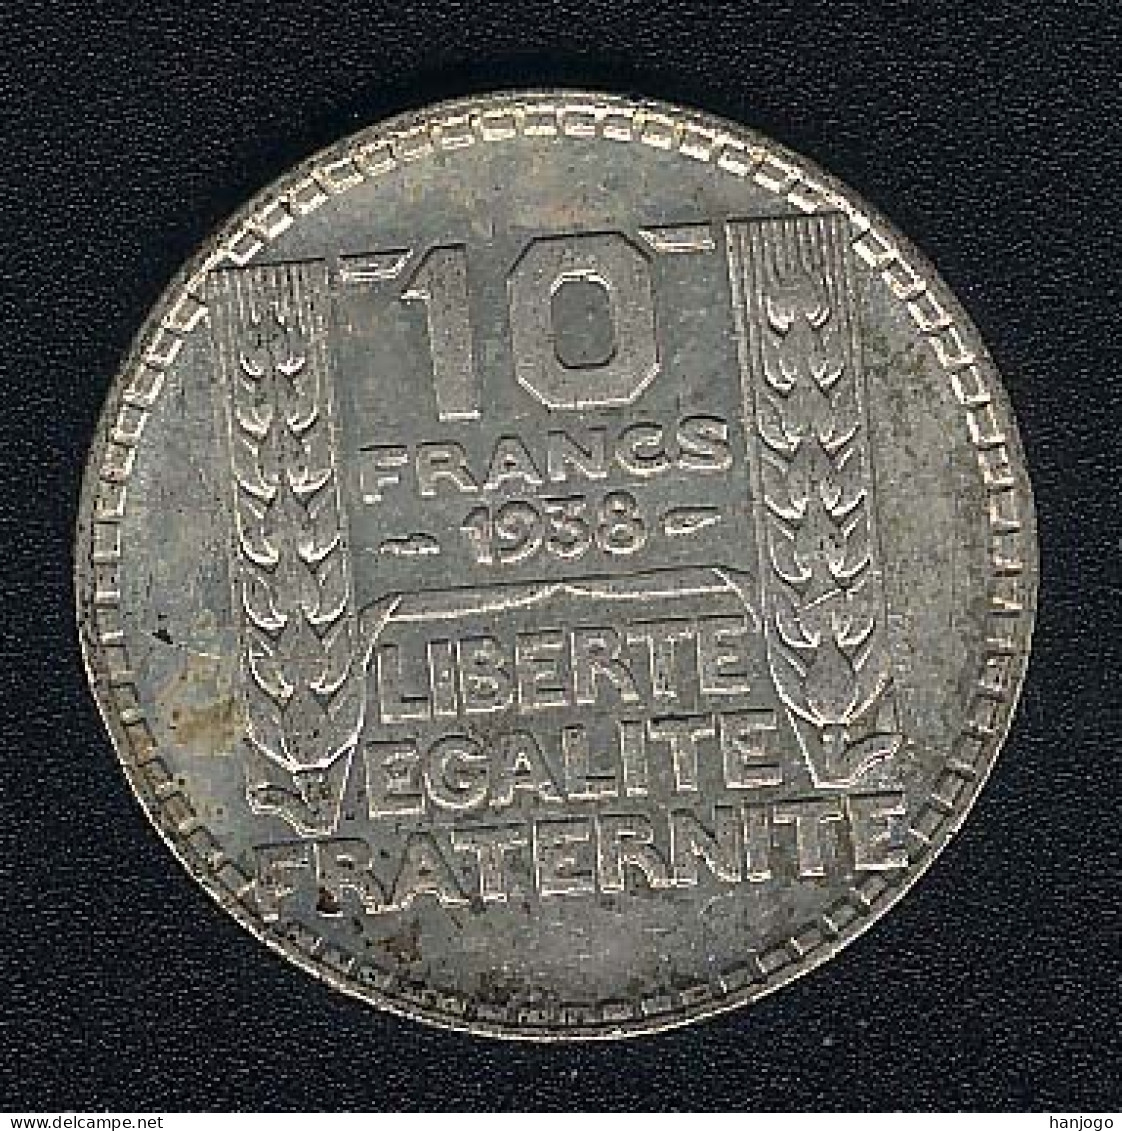 Frankreich, 10 Francs 1938, Silber, XF - 10 Francs